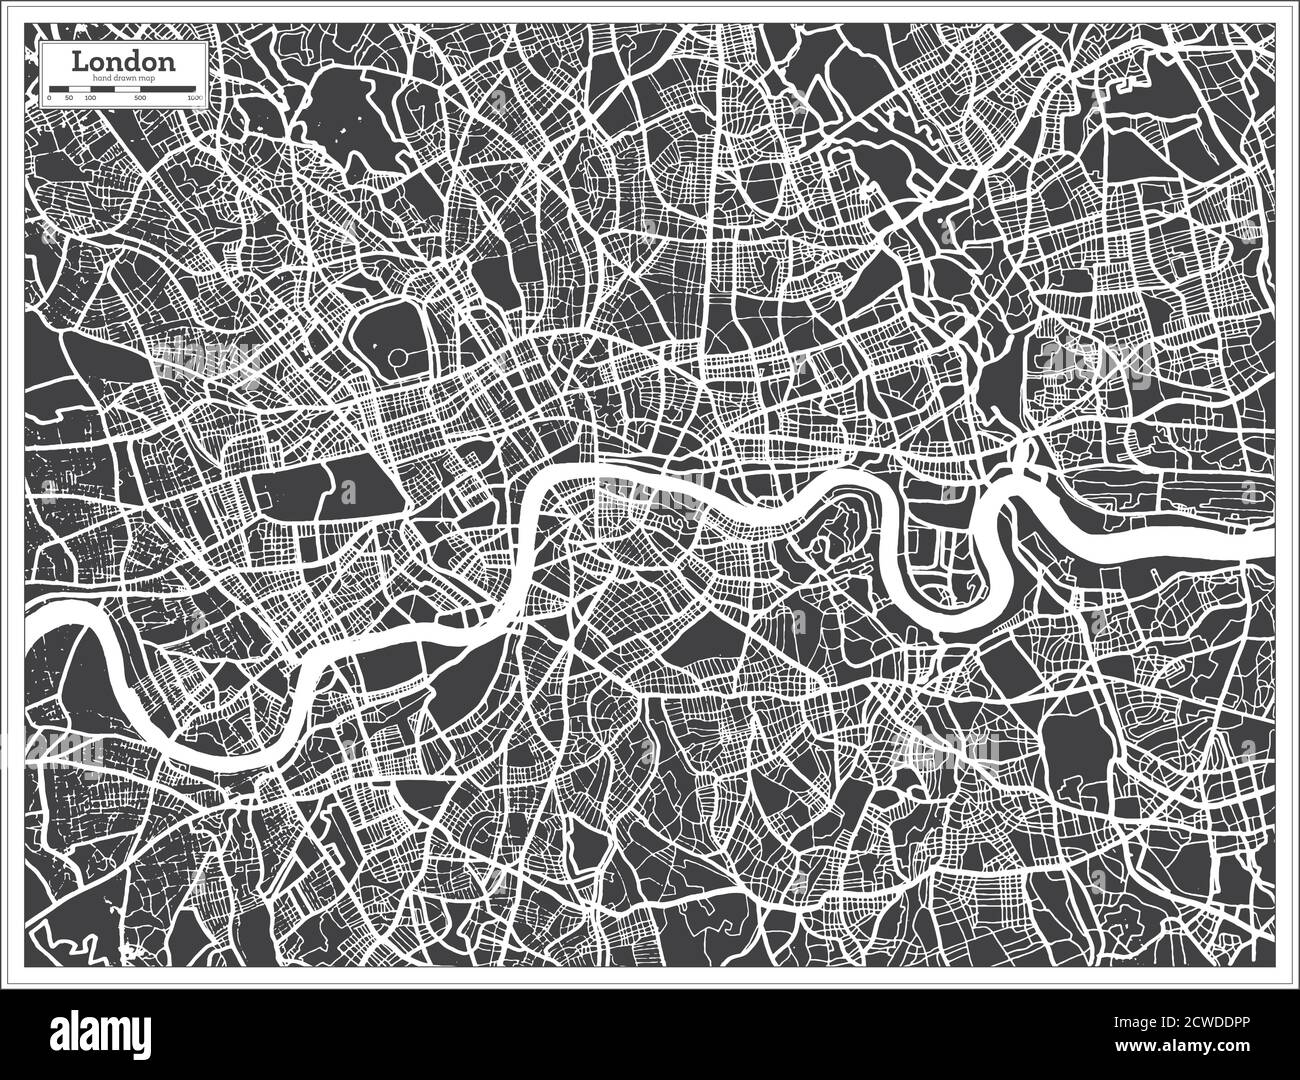 London Stadtplan in Schwarz-Weiß-Farbe im Retro-Stil. Übersichtskarte. Vektorgrafik. Stock Vektor